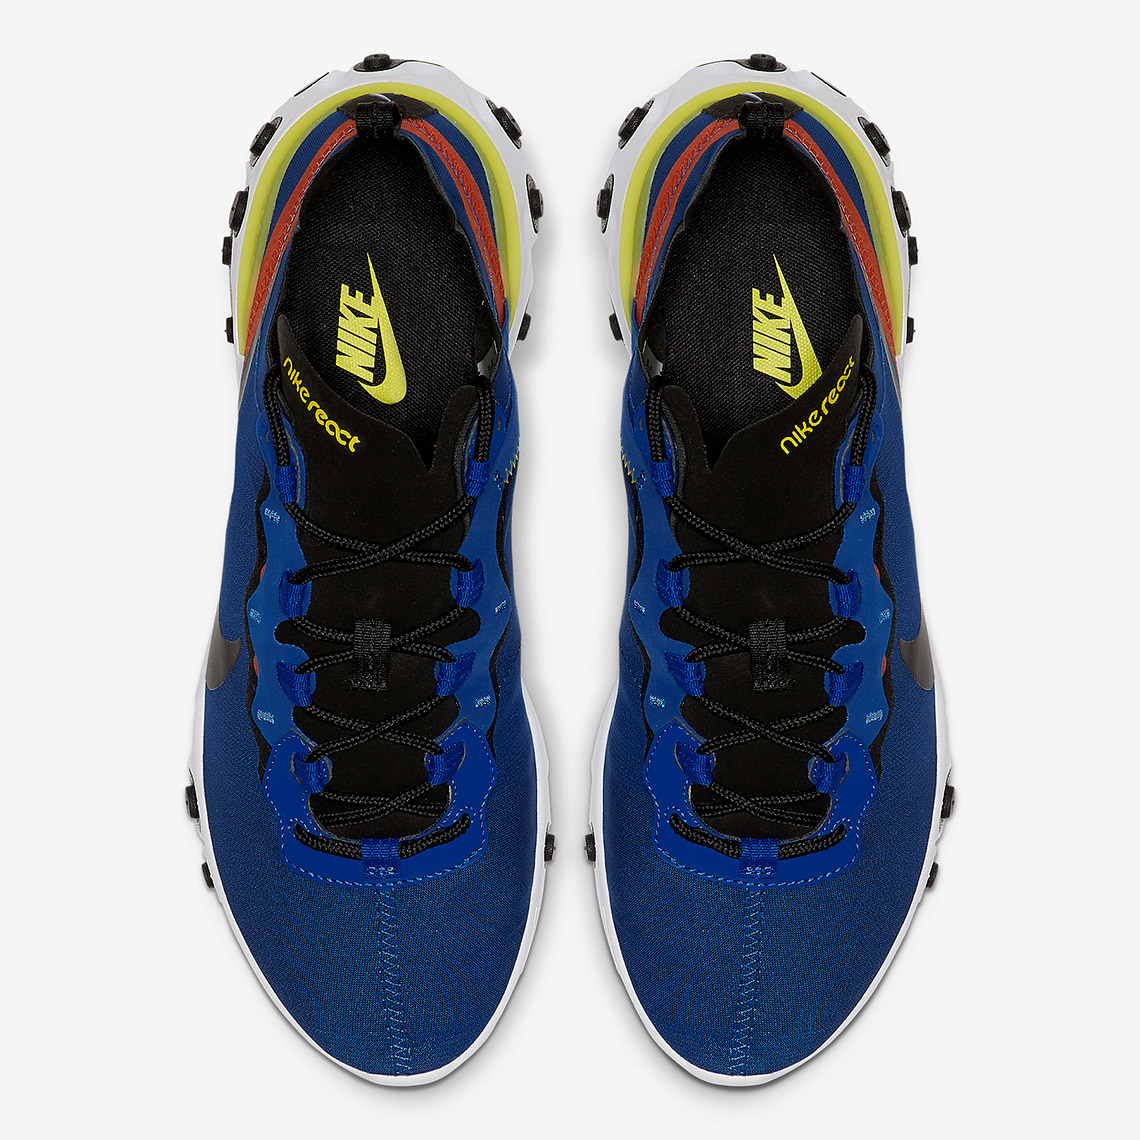 NIKE Shoes REACT ELEMENT 55 Men's Size 6 Royal Blue Athletic Sneaker  BQ6166-403